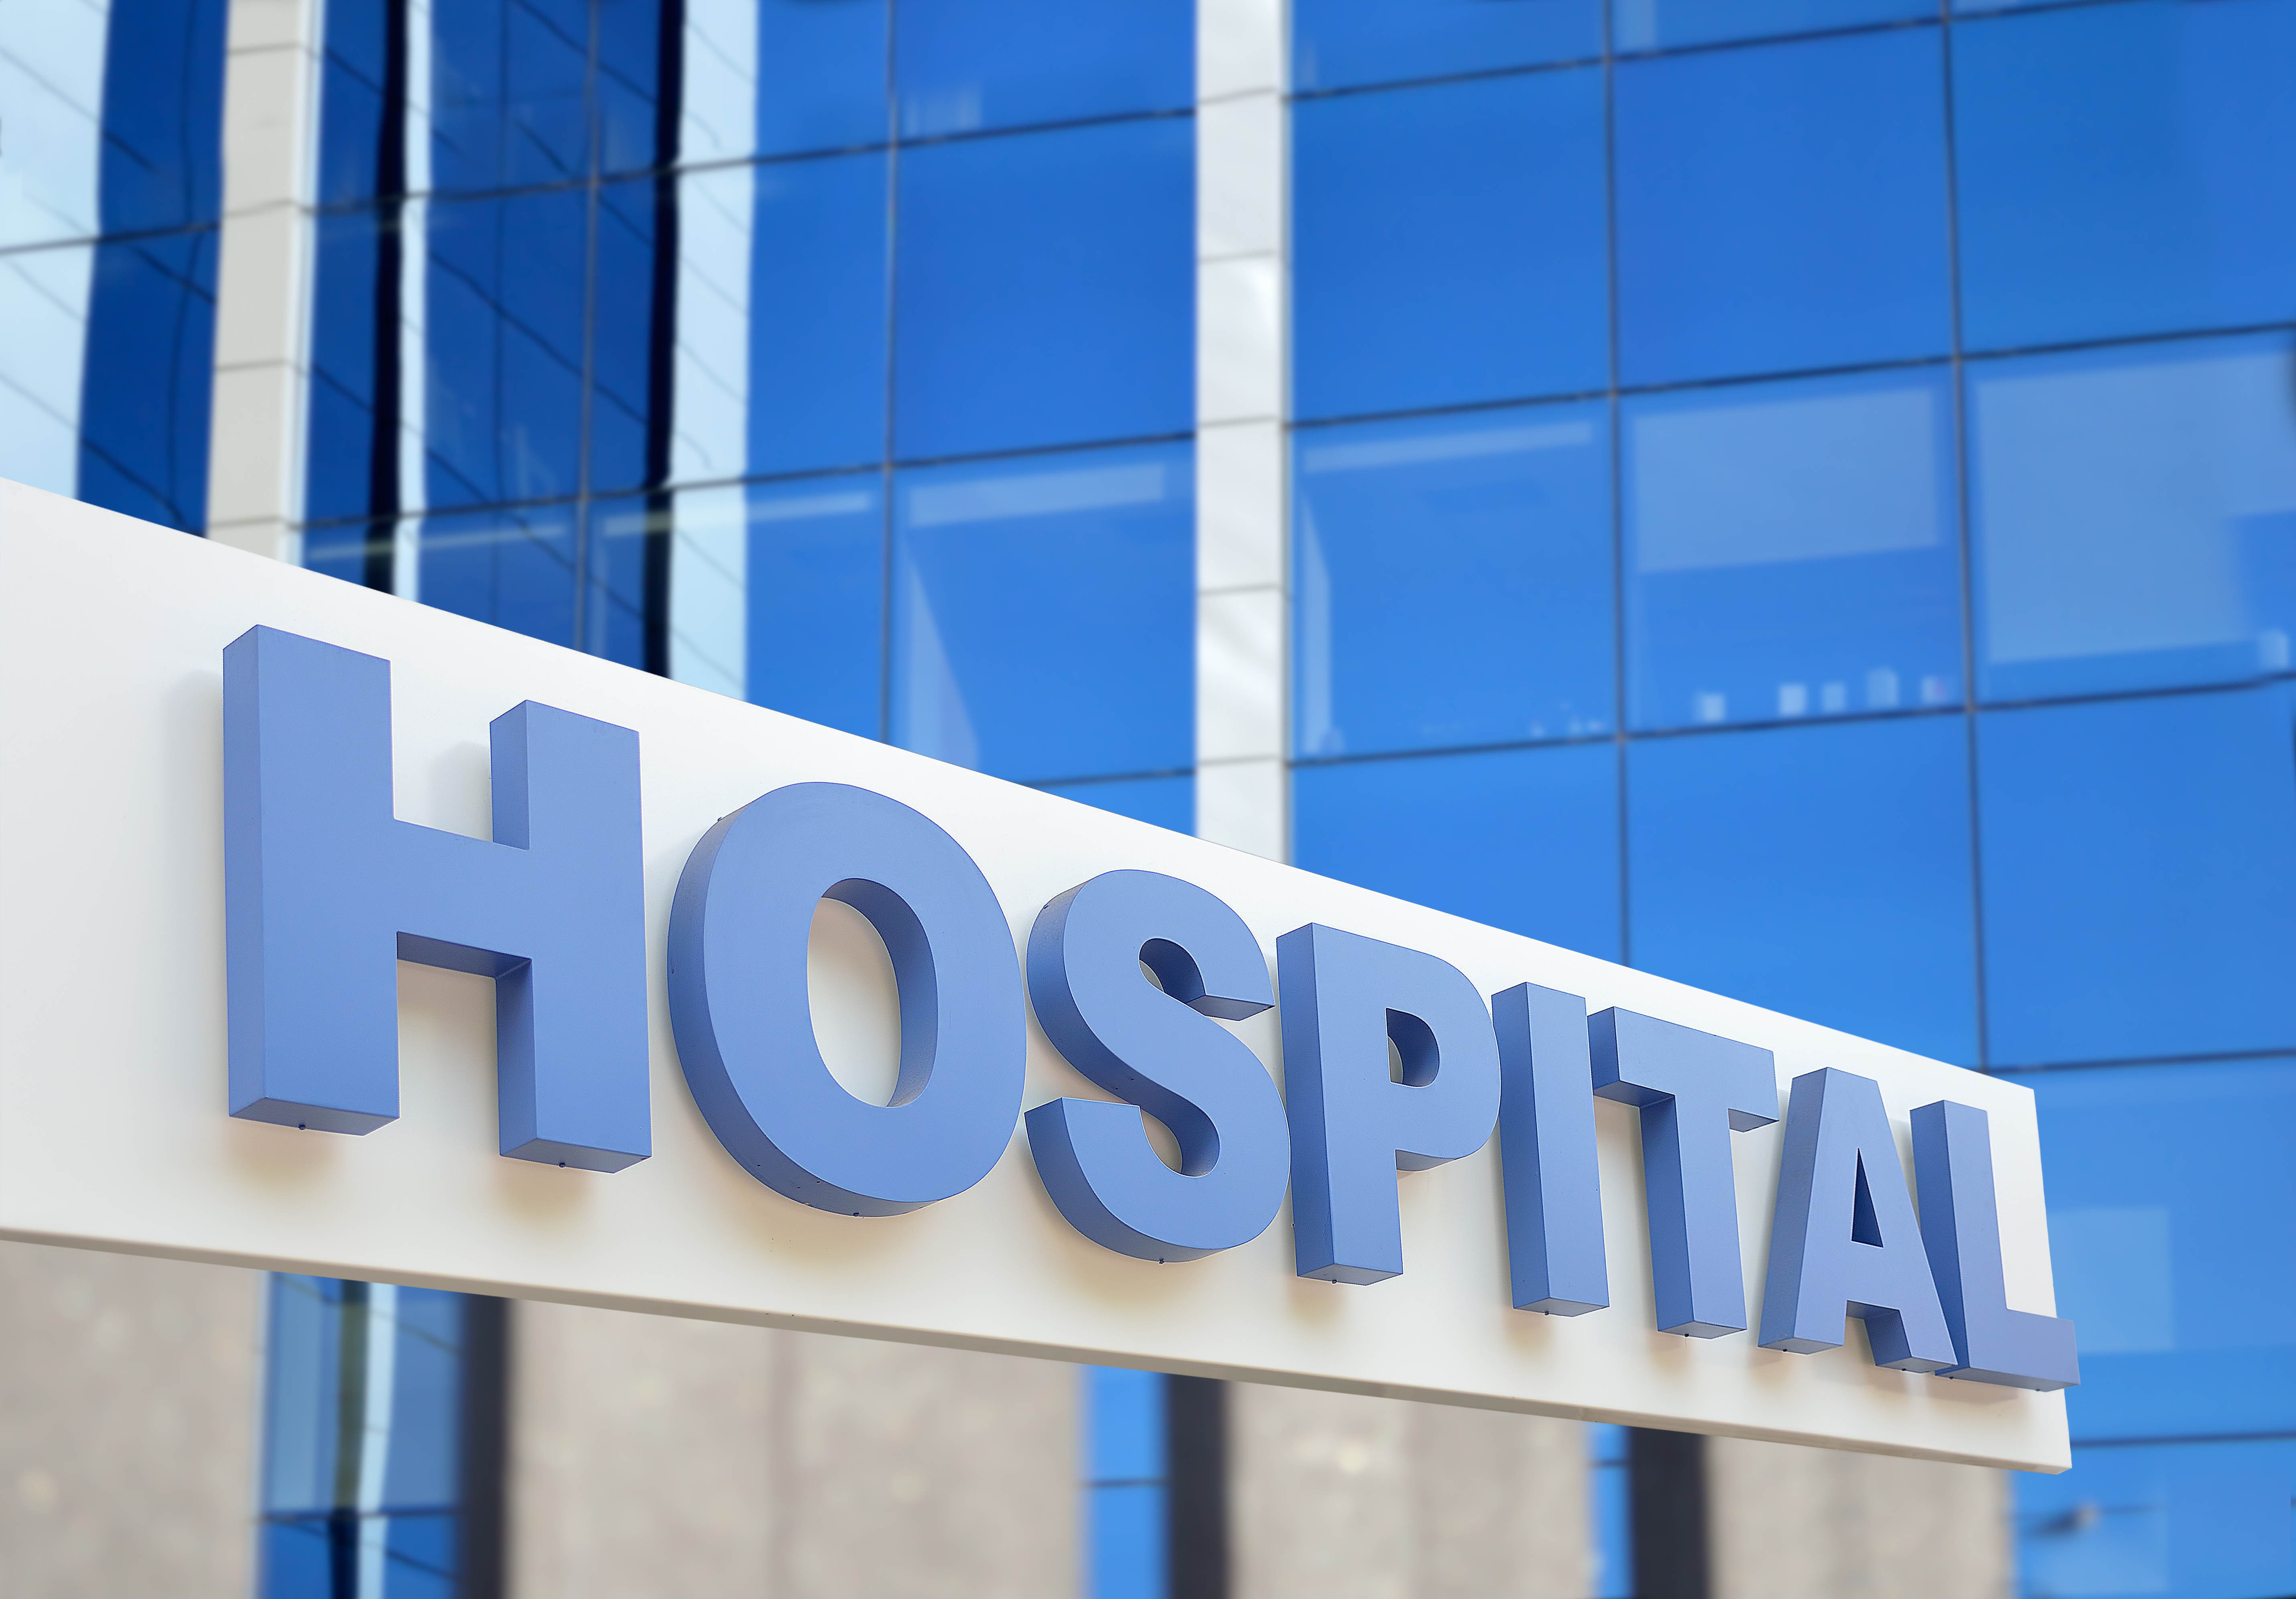 Primer plano del letrero del edificio del hospital, con el cielo reflejándose en el cristal. | Fuente: Shutterstock